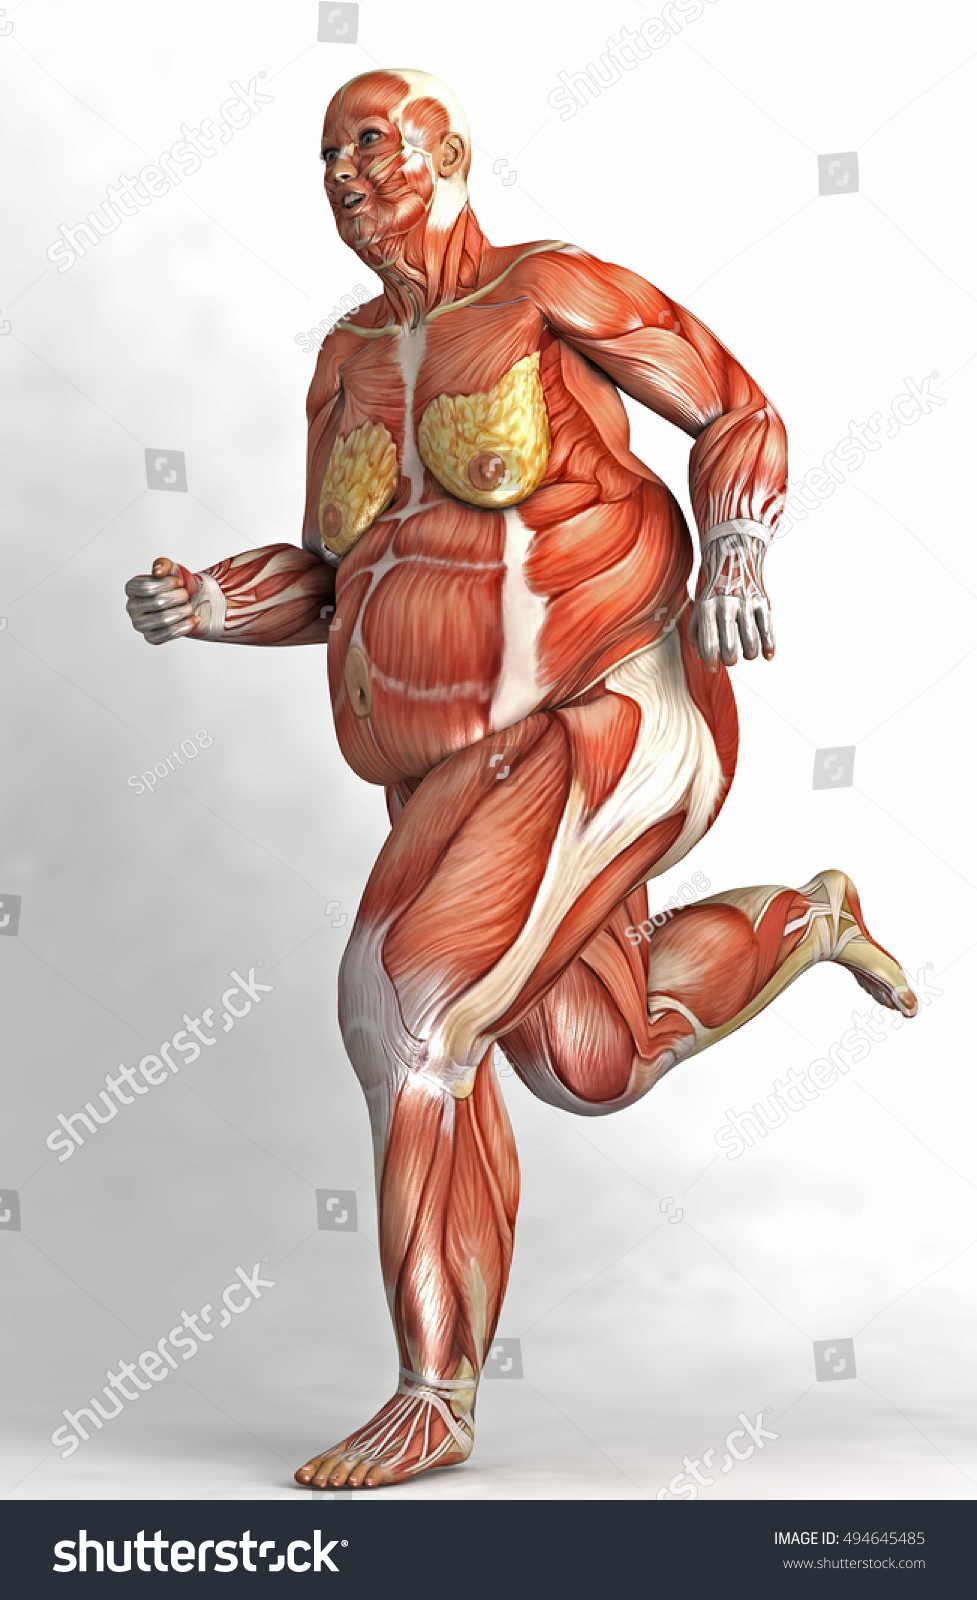 Наличие толстой мышечной стенки и мелких камней. Мышцы человека. Скелет человека с мышцами. Тело человека без кожи и мышц. Мышцы женского тела.